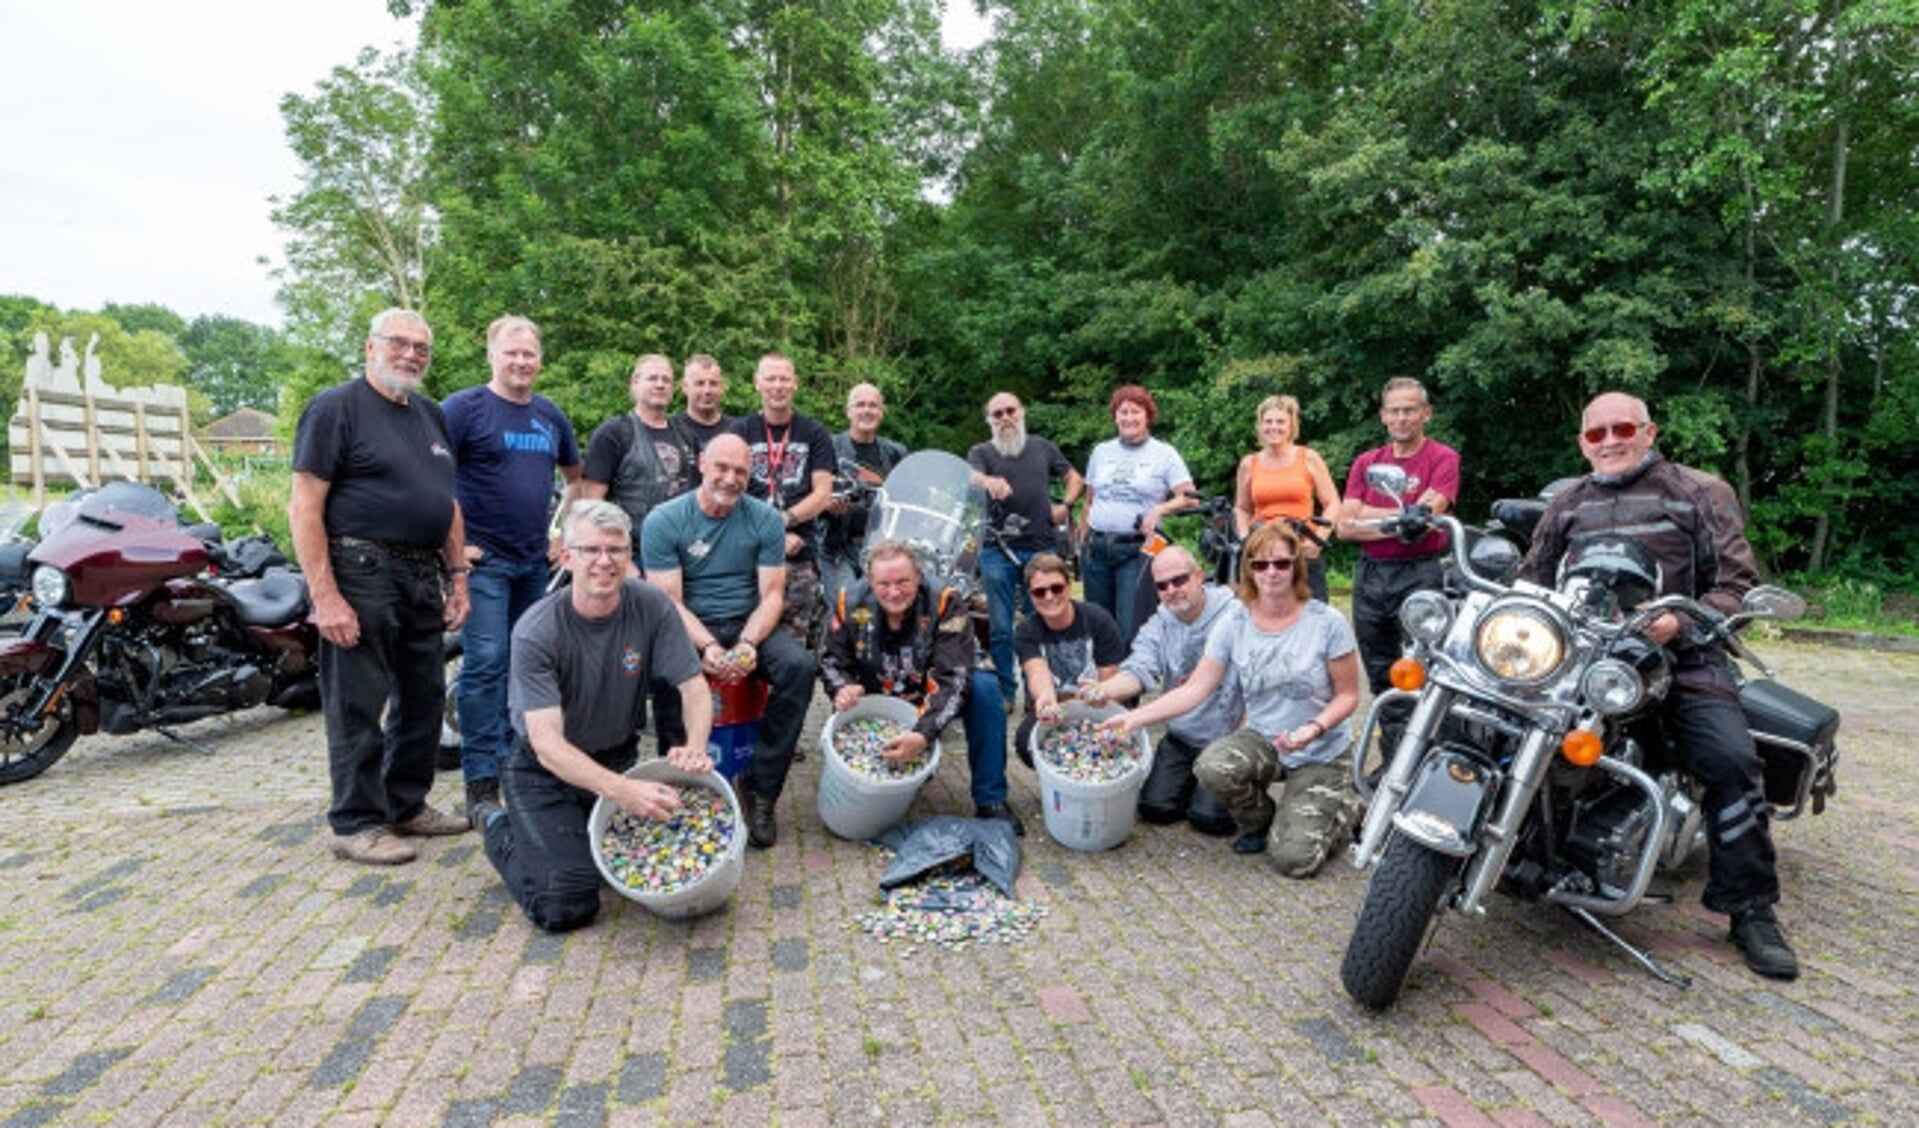  Leden van de Zwolse Harley Davidsonclub brengen een grote hoeveelheid ingezamelde bierdoppen naar Sven de Boer. De inzamelactie is voor de aanschaf van een rolstoelbus.